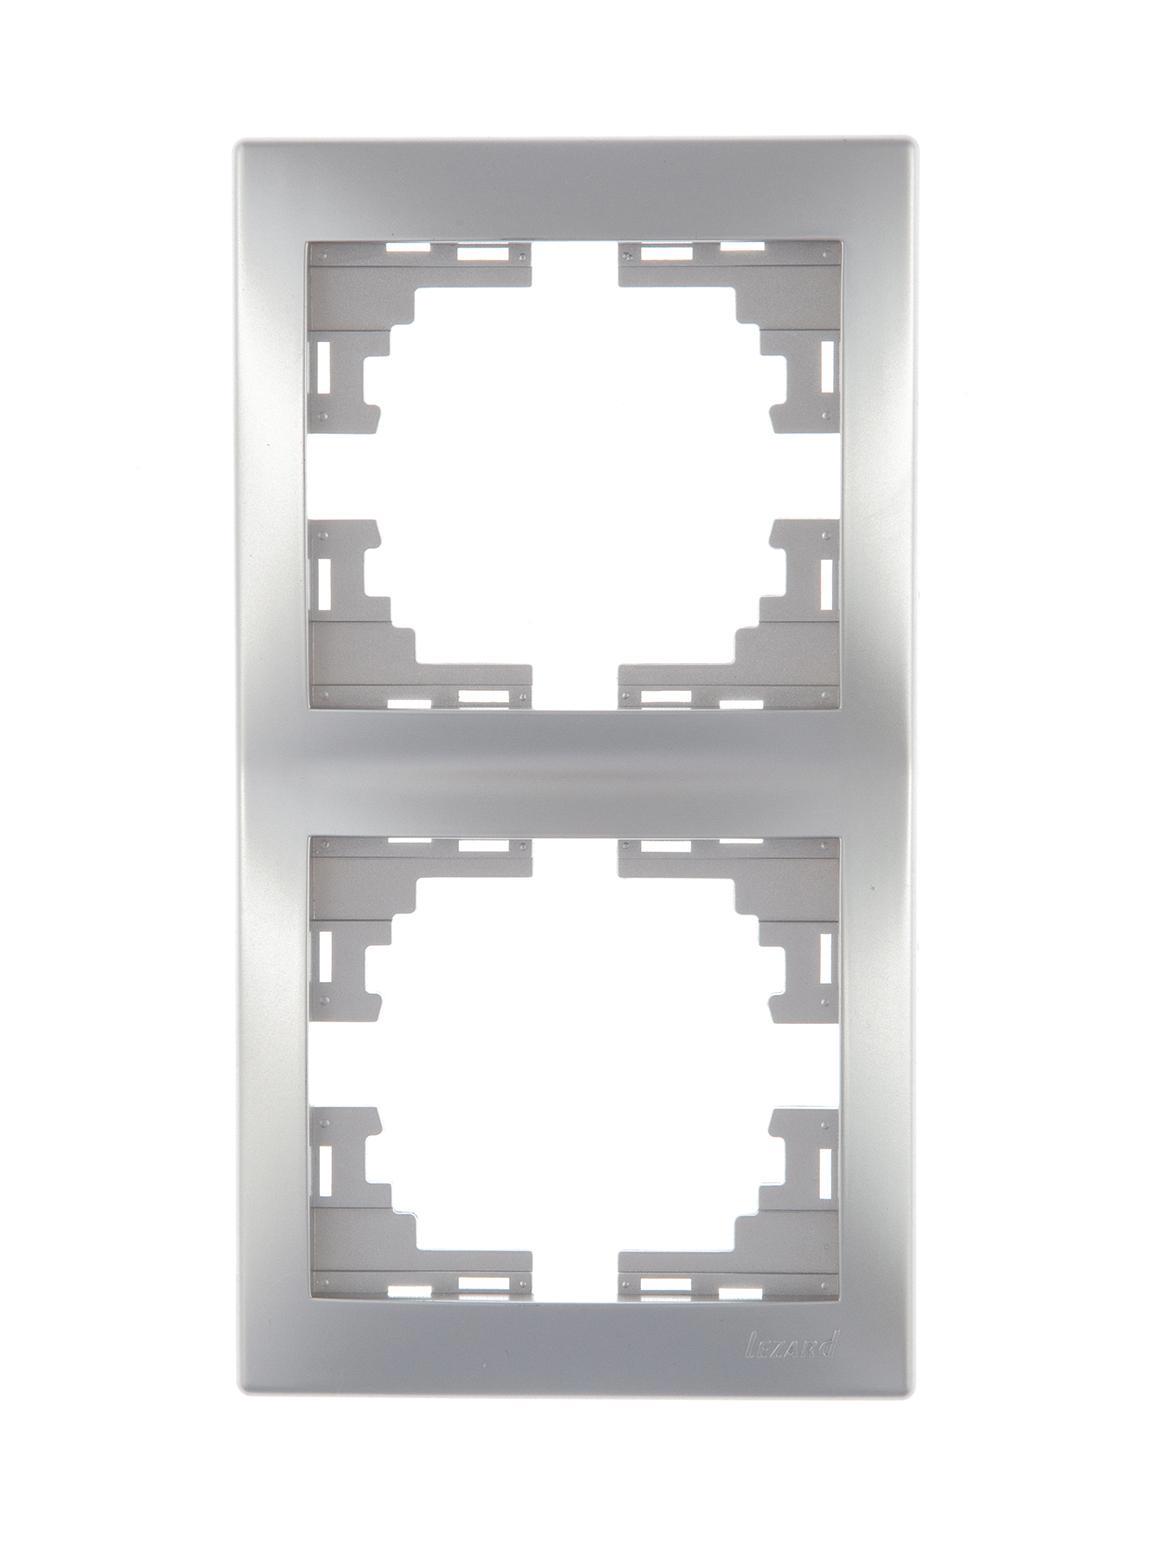 90167984 Рамка для розеток и выключателей 2 поста вертикальная цвет серый / серебристый Mira STLM-0121819 LEZARD